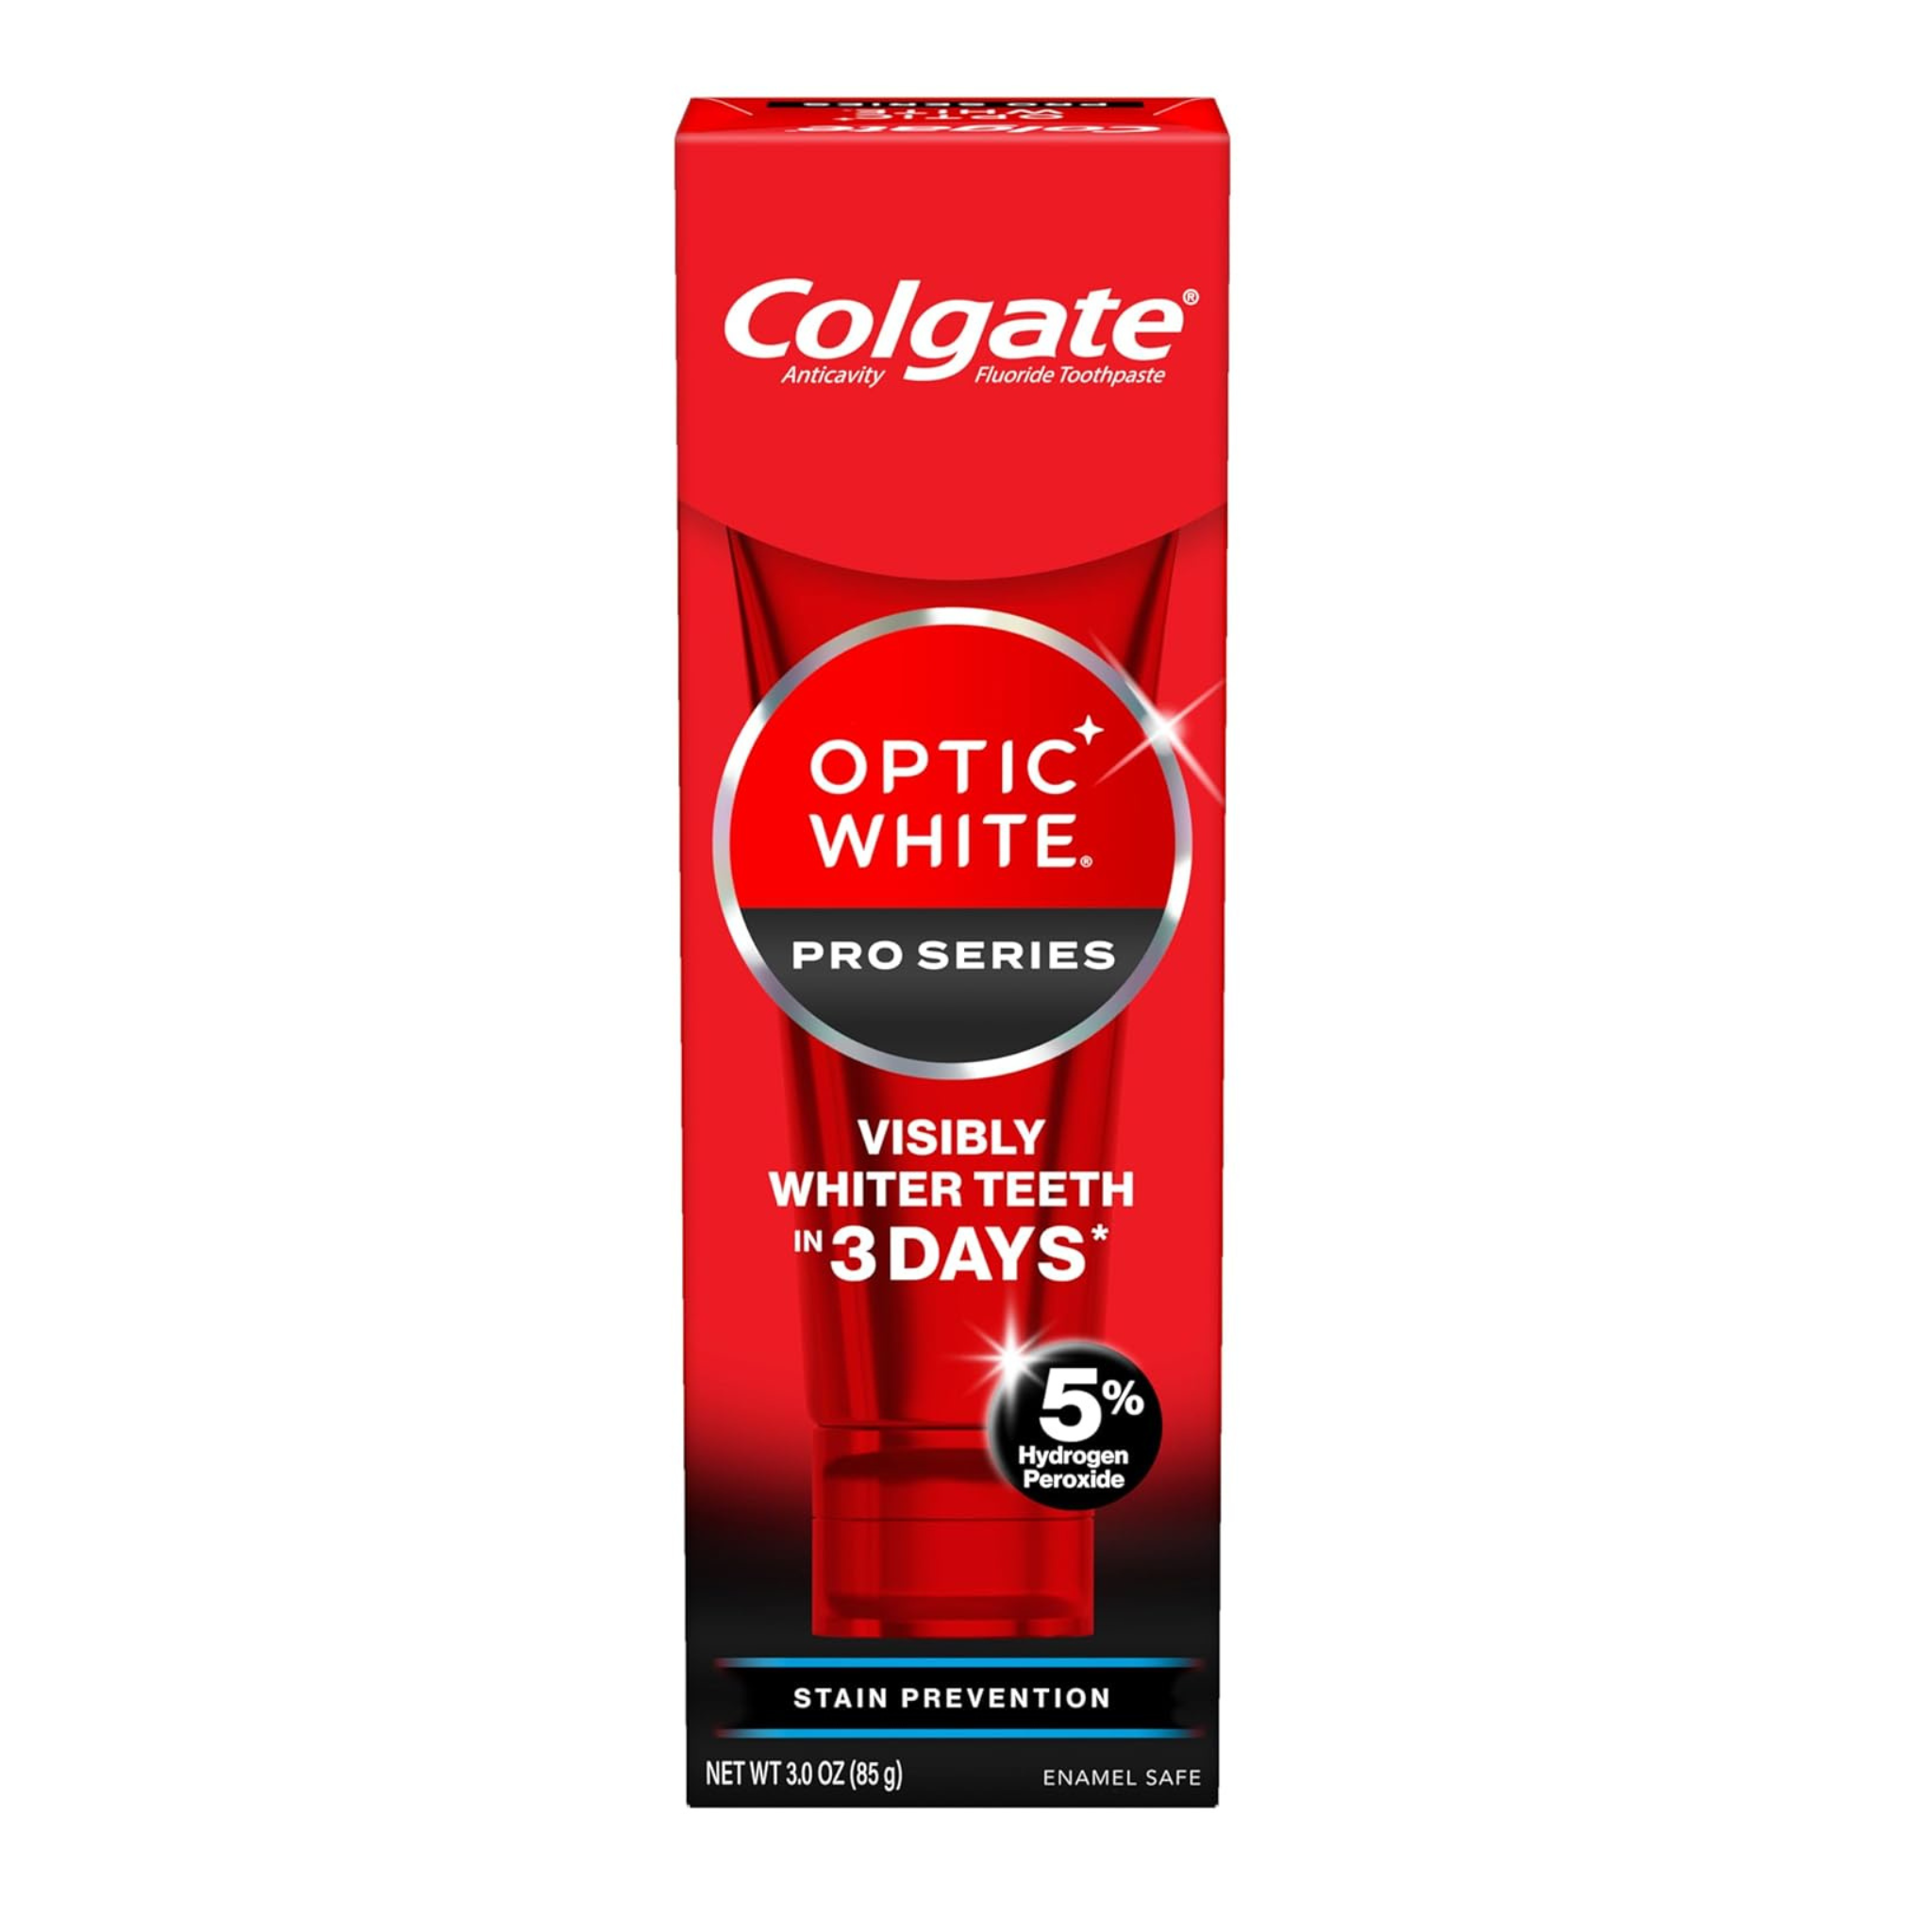 Colgate Optic White Pro Series Whitening Toothpaste 3oz Tube